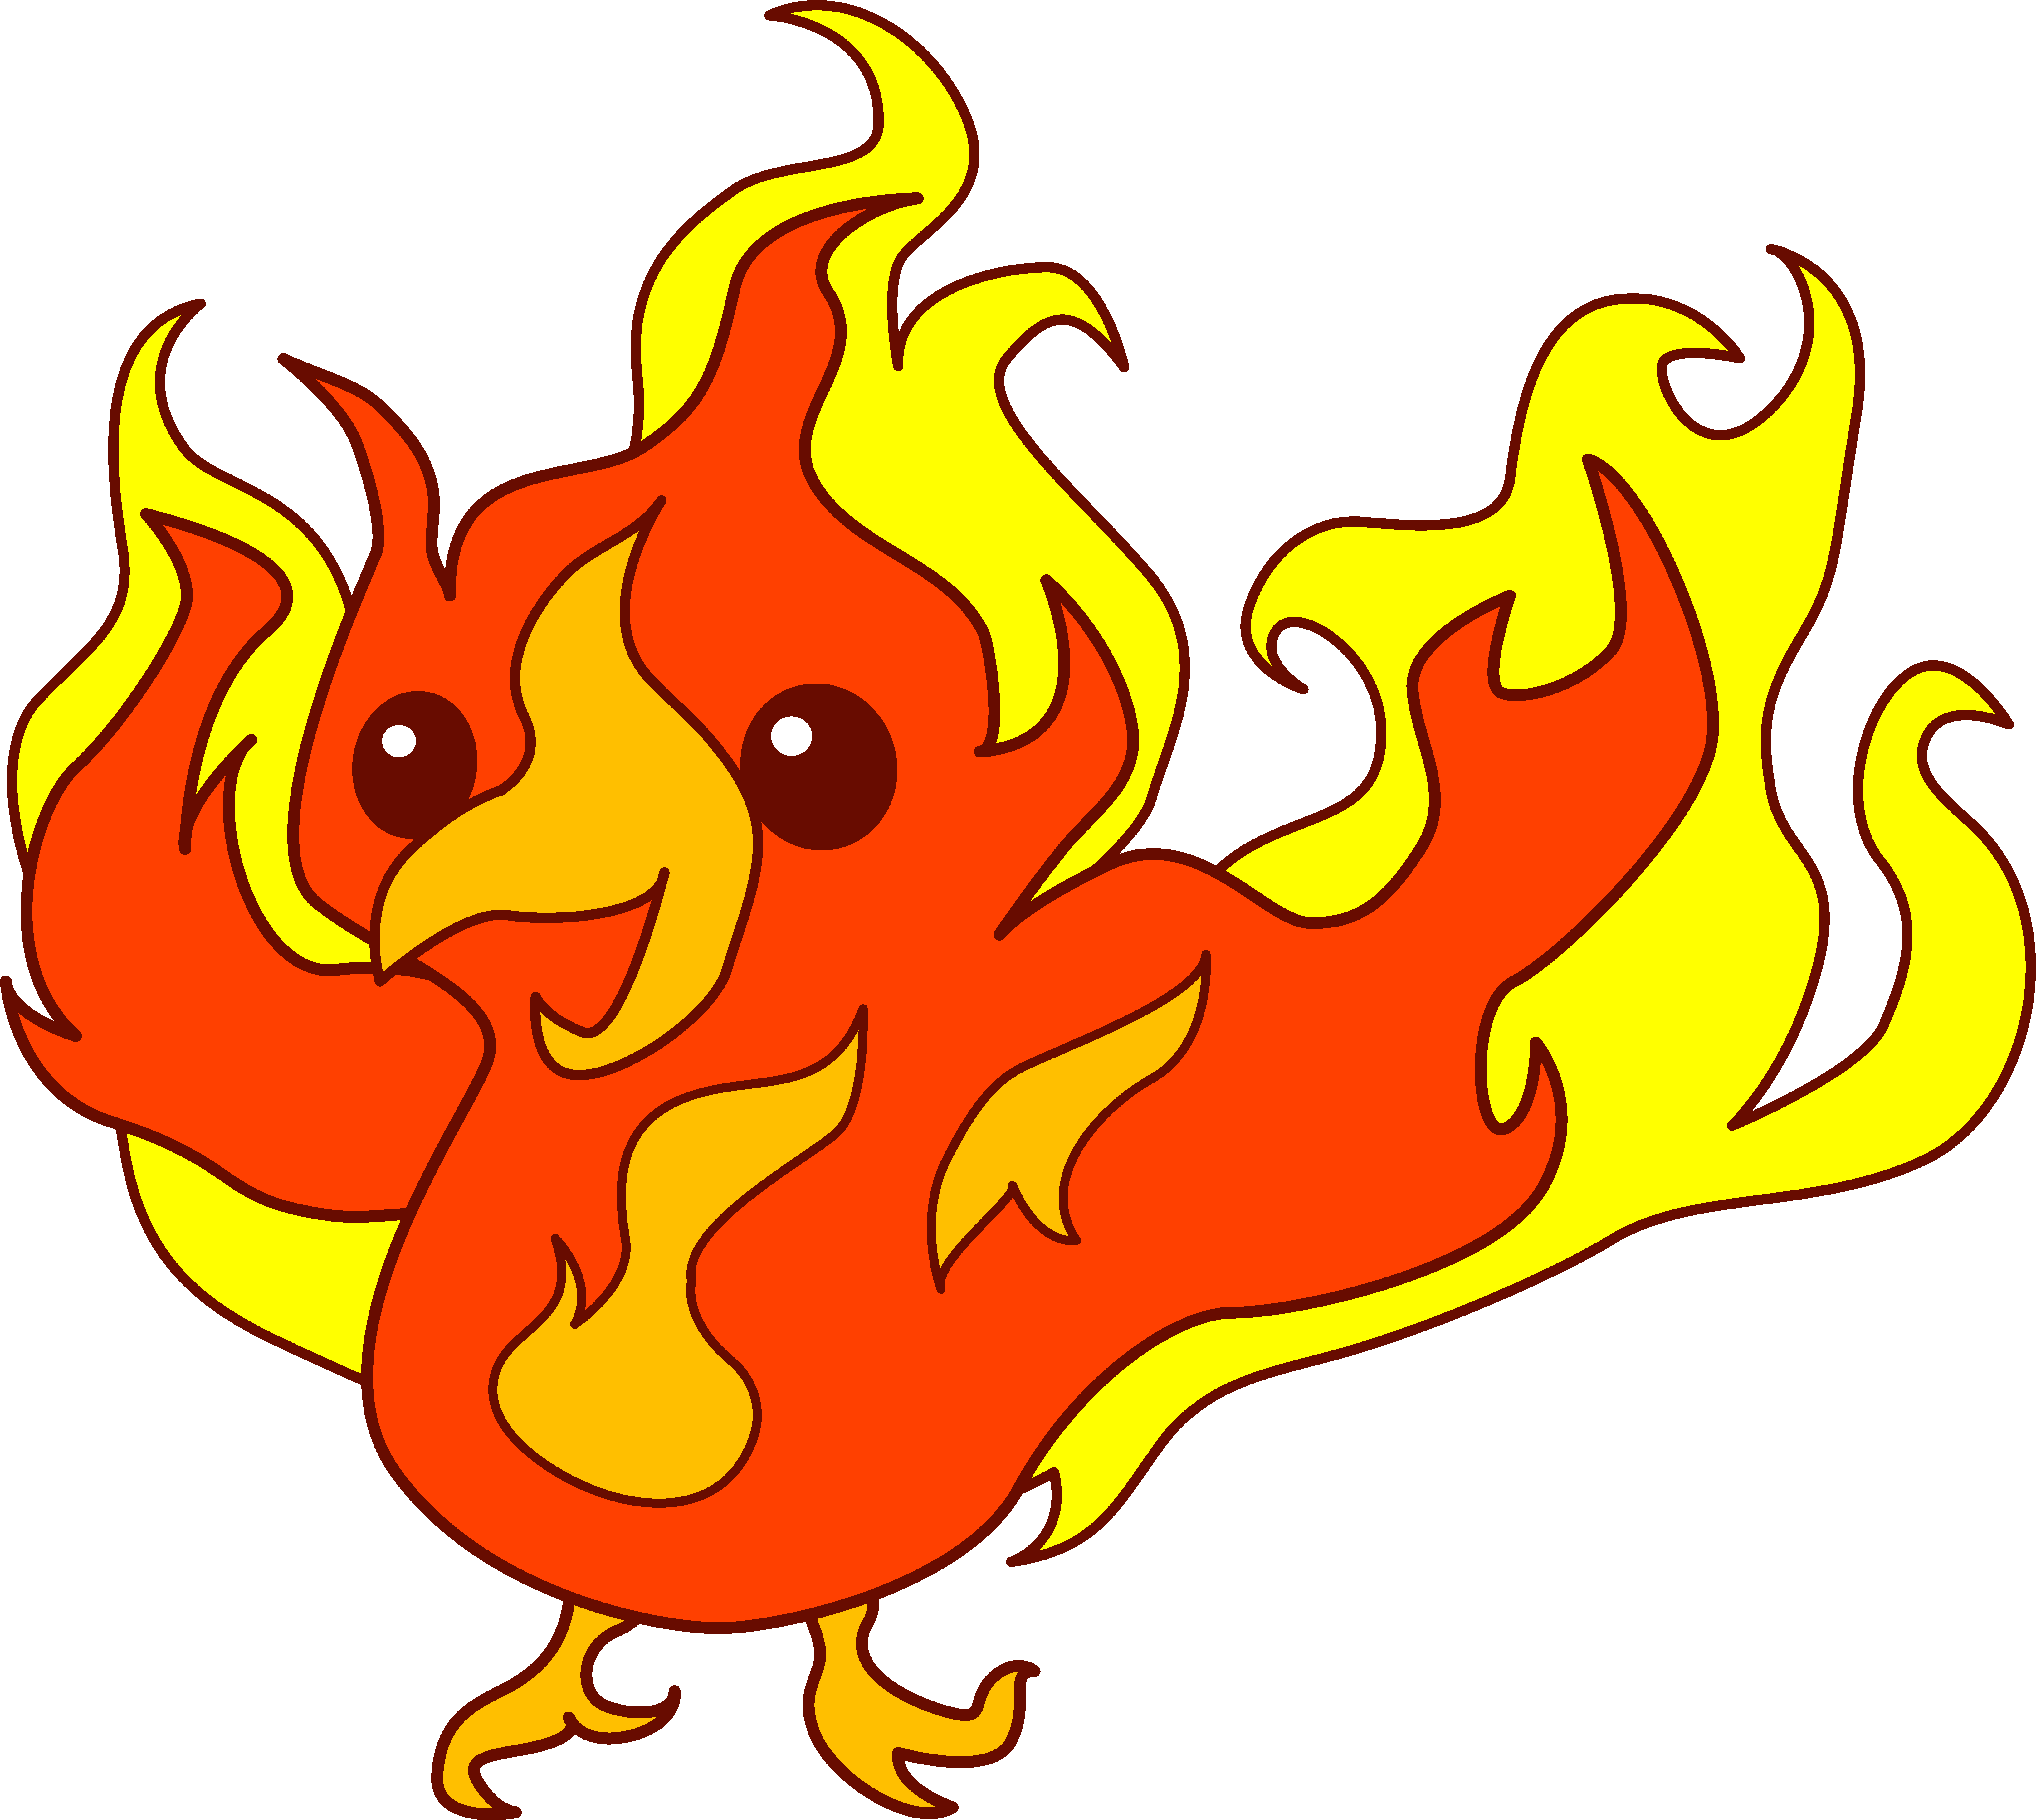 Cute fiery phoenix.